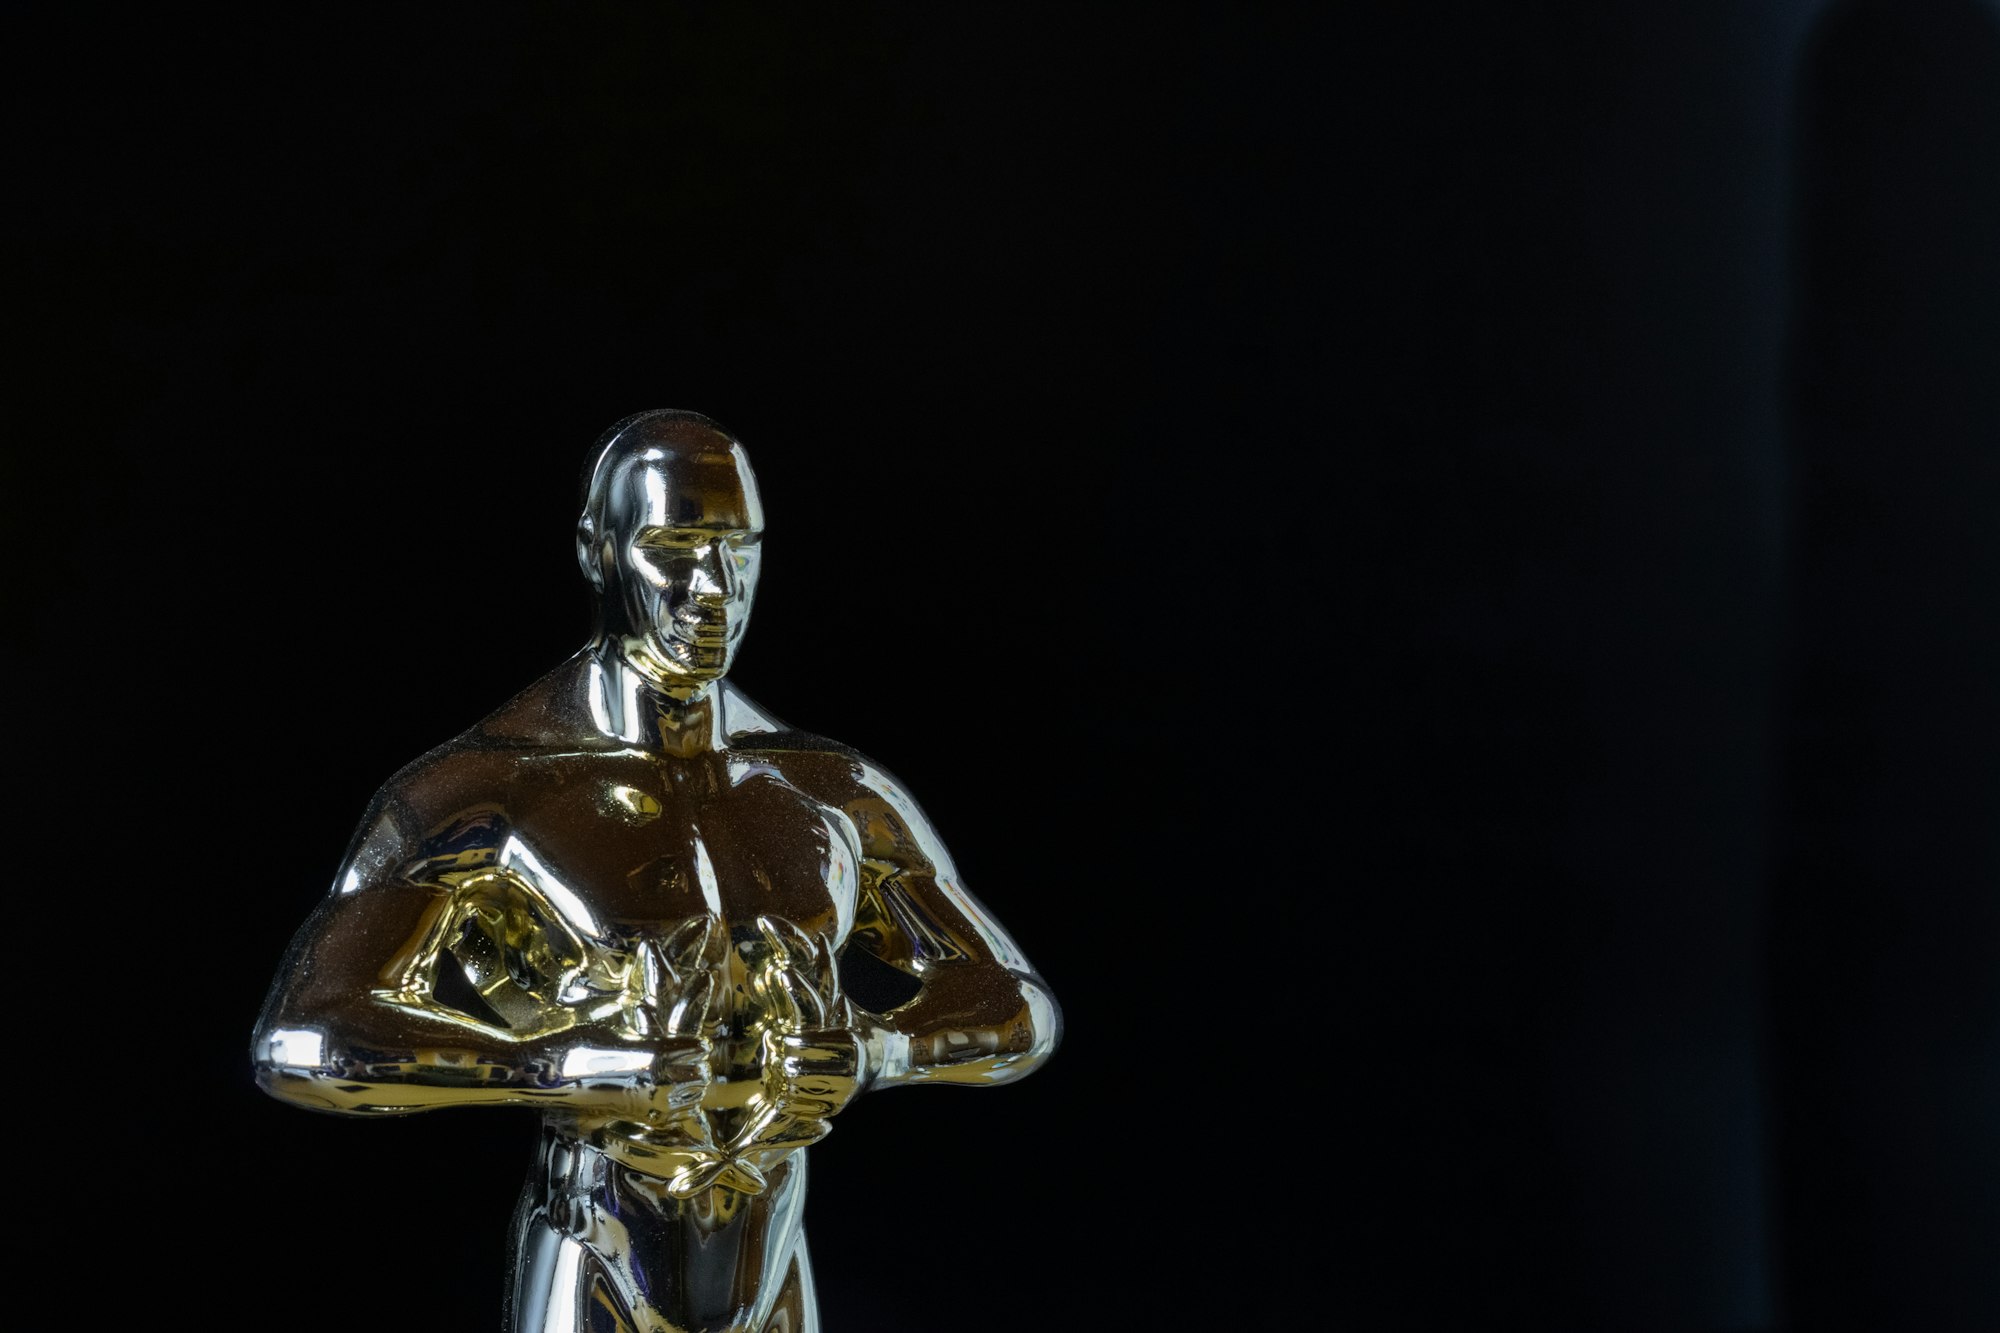 Comissão de Seleção do Oscar é anunciada hoje, com 25 membros titulares